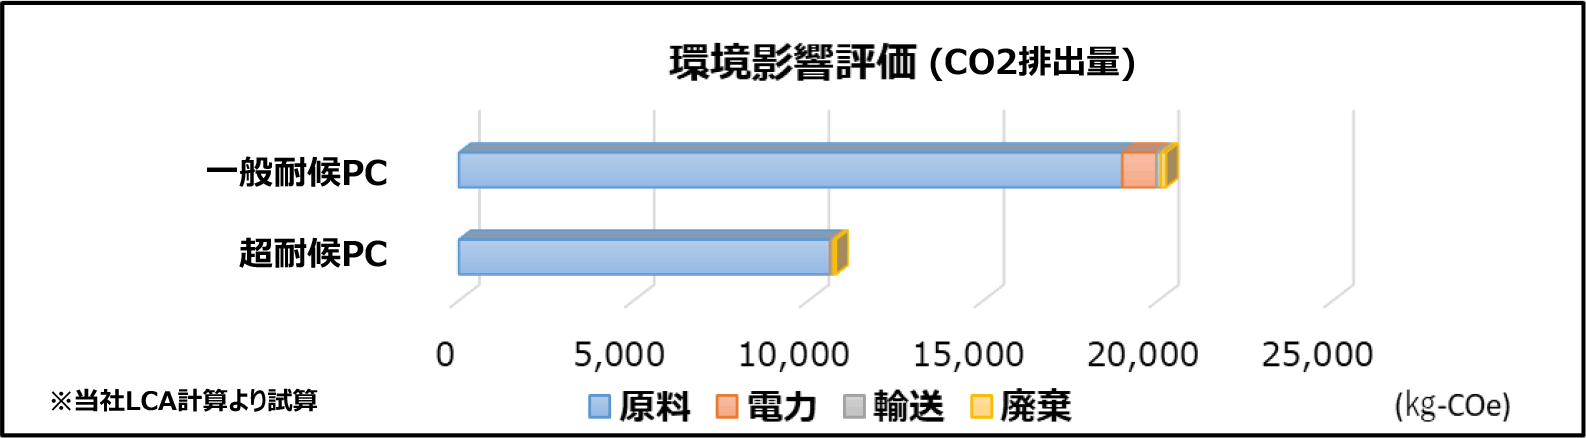 環境影響評価グラフ:一般耐候ポリカーボネート板と超耐候ポリカーボネート板のCO2排出量の比較グラフです。
